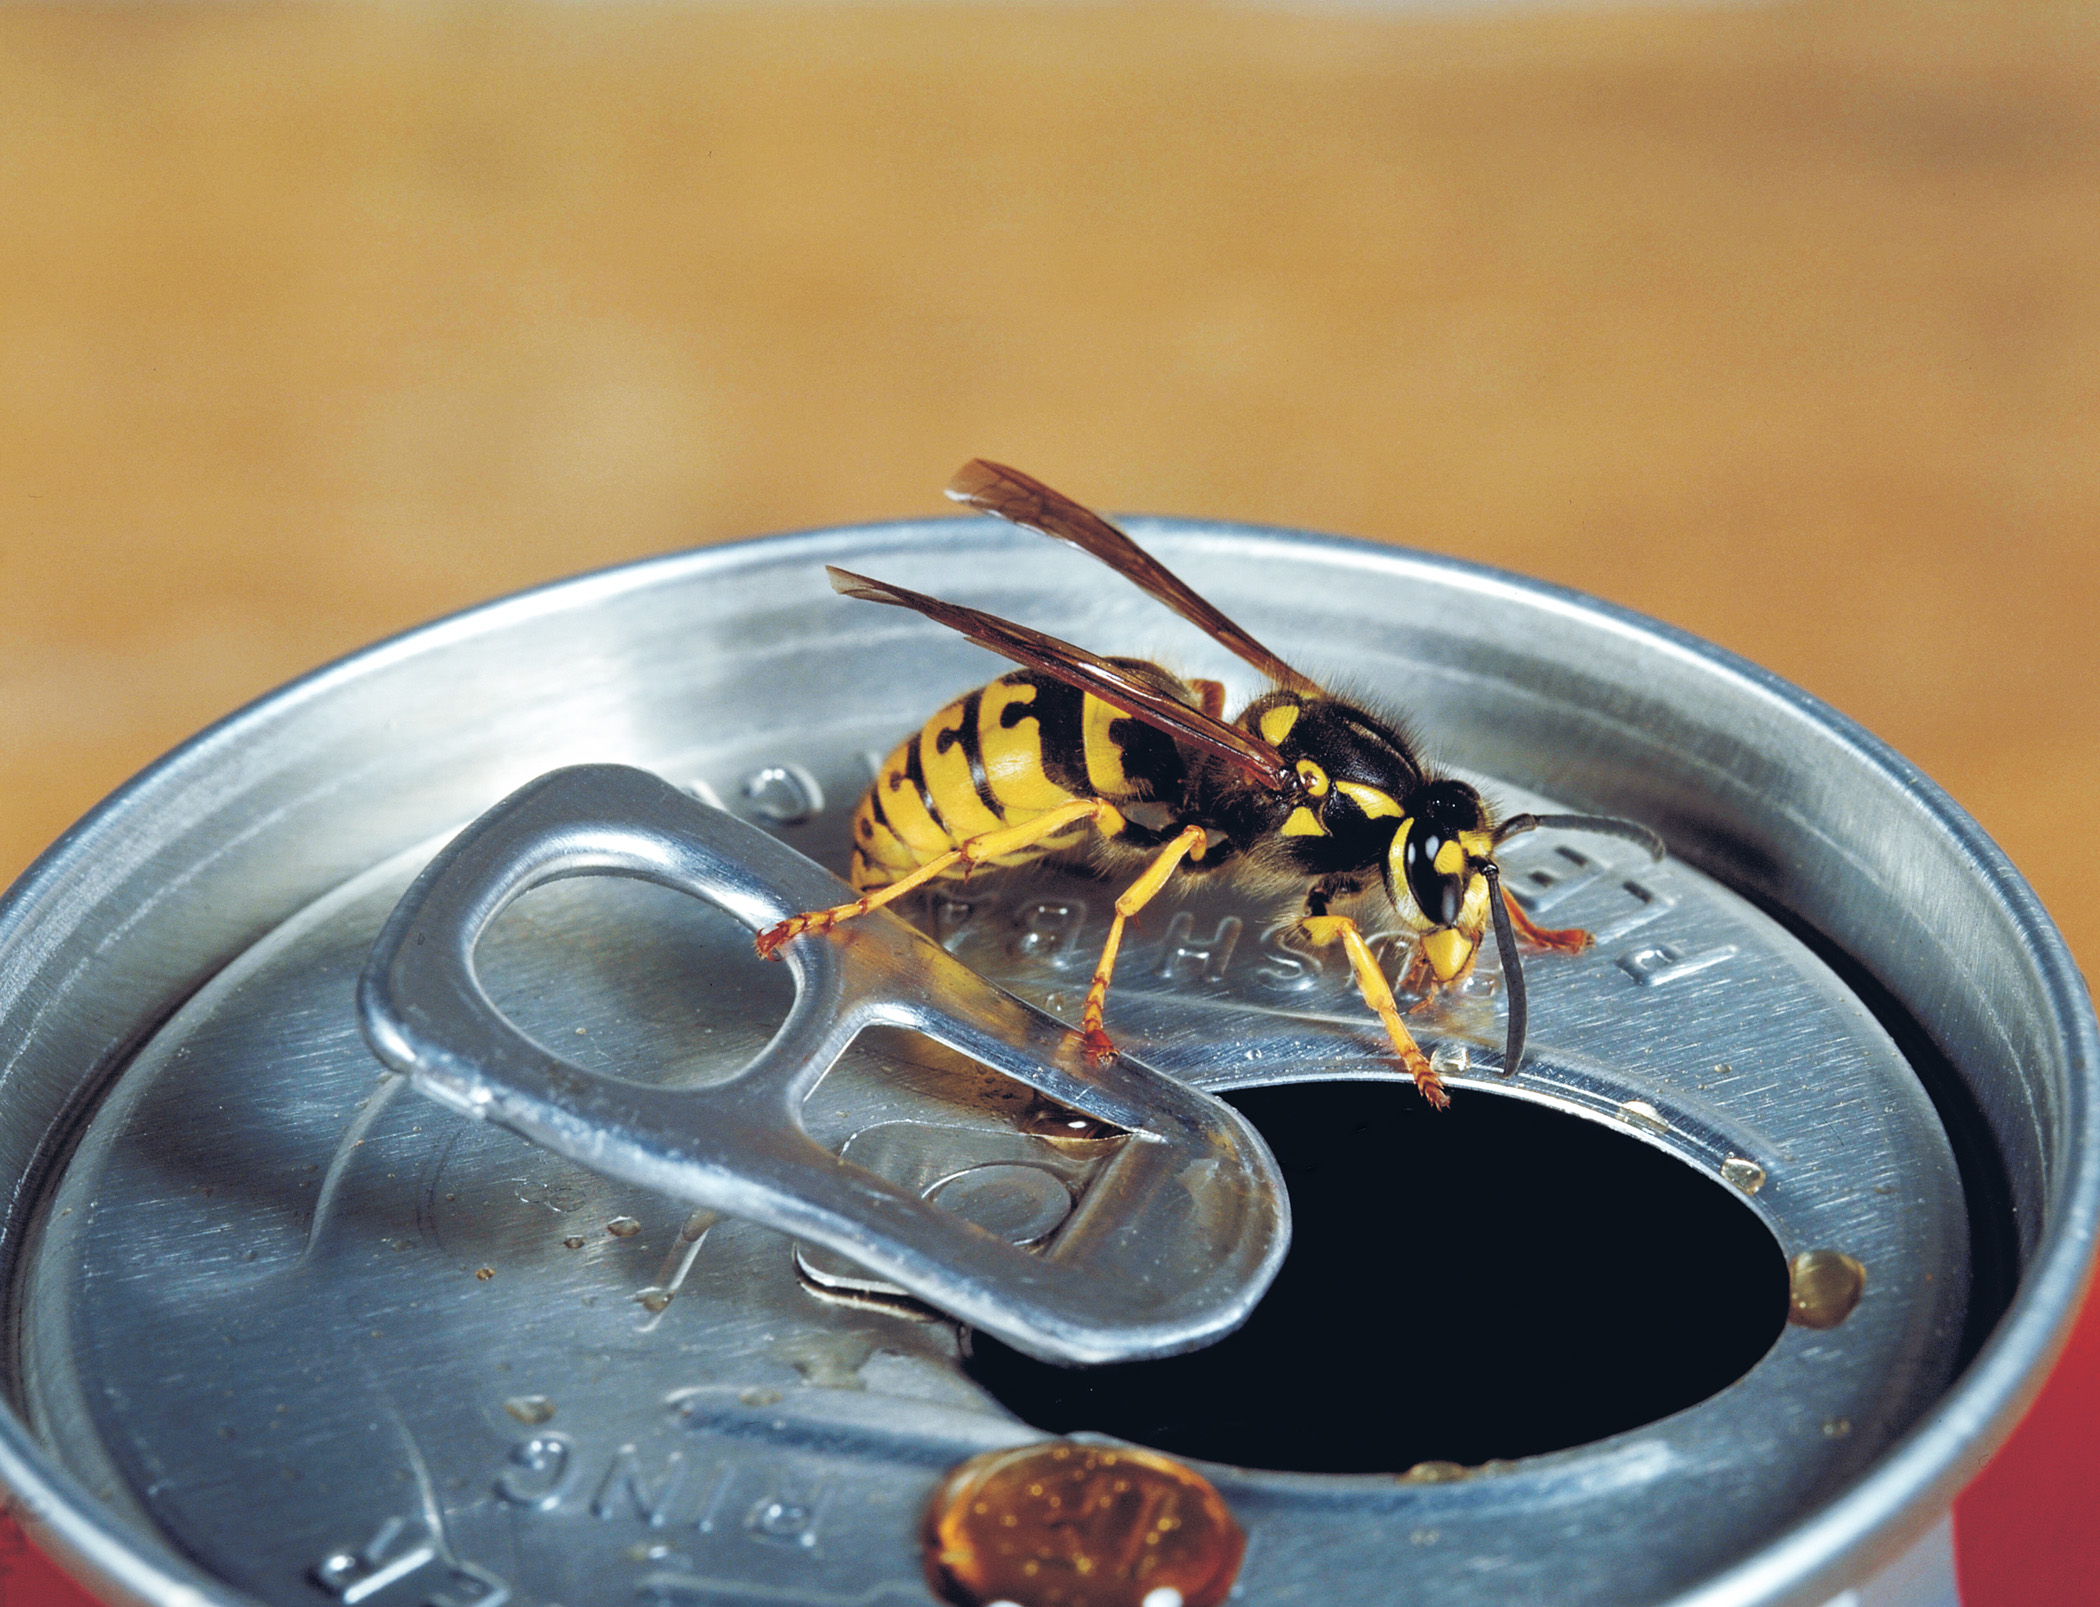 5 Mittel Gegen Wespen Mit Diesen Tipps Und Tricks Vertreiben Sie Die Plagegeister